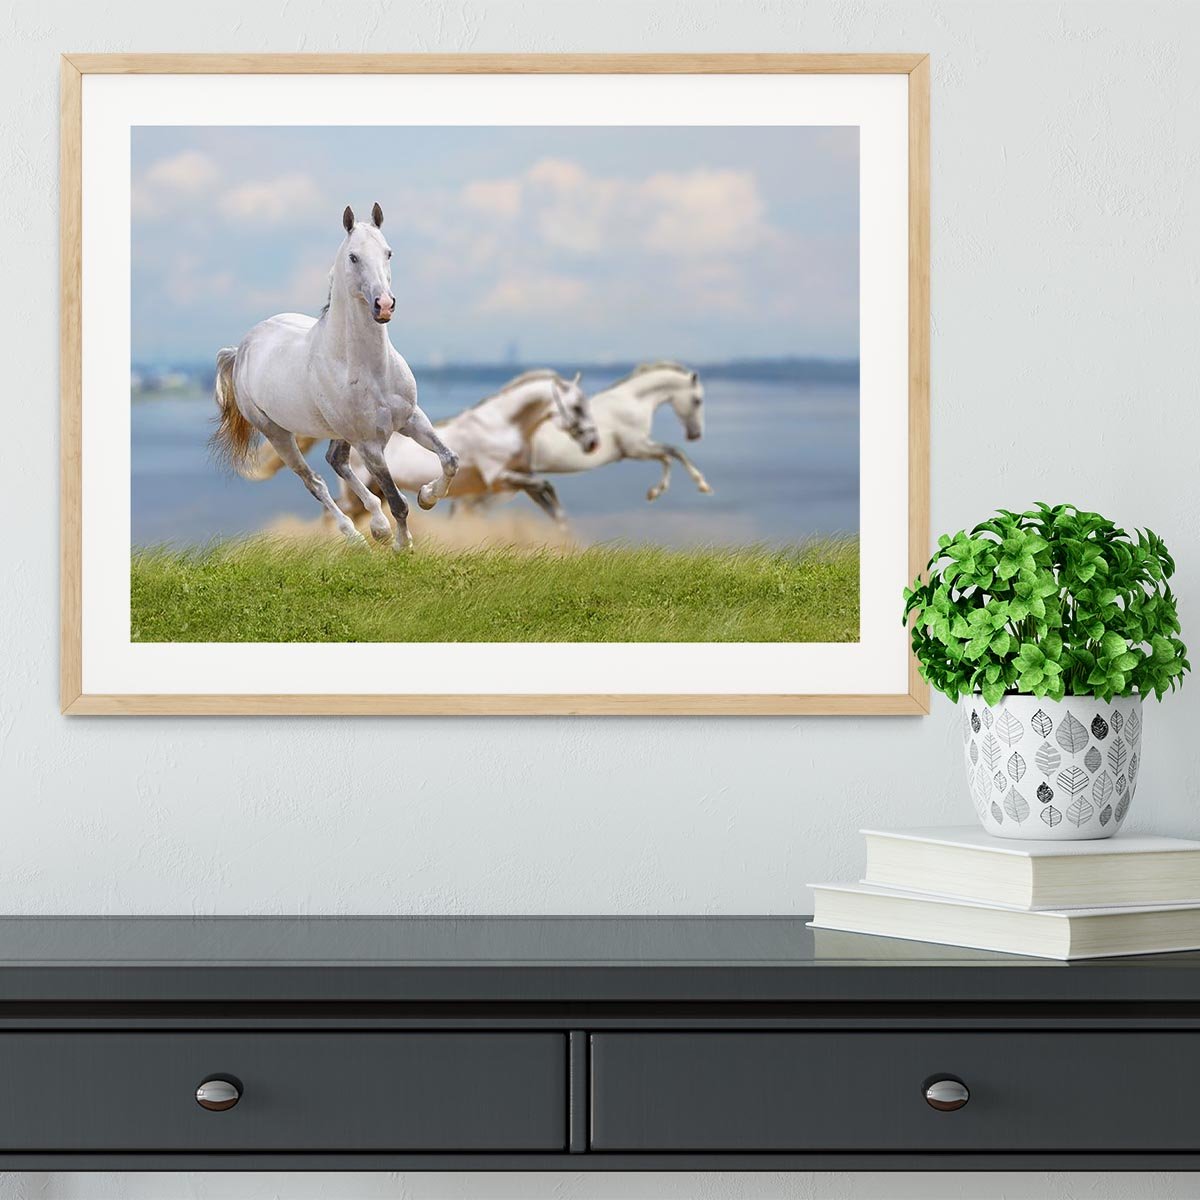 White horses running near water Framed Print - Canvas Art Rocks - 3